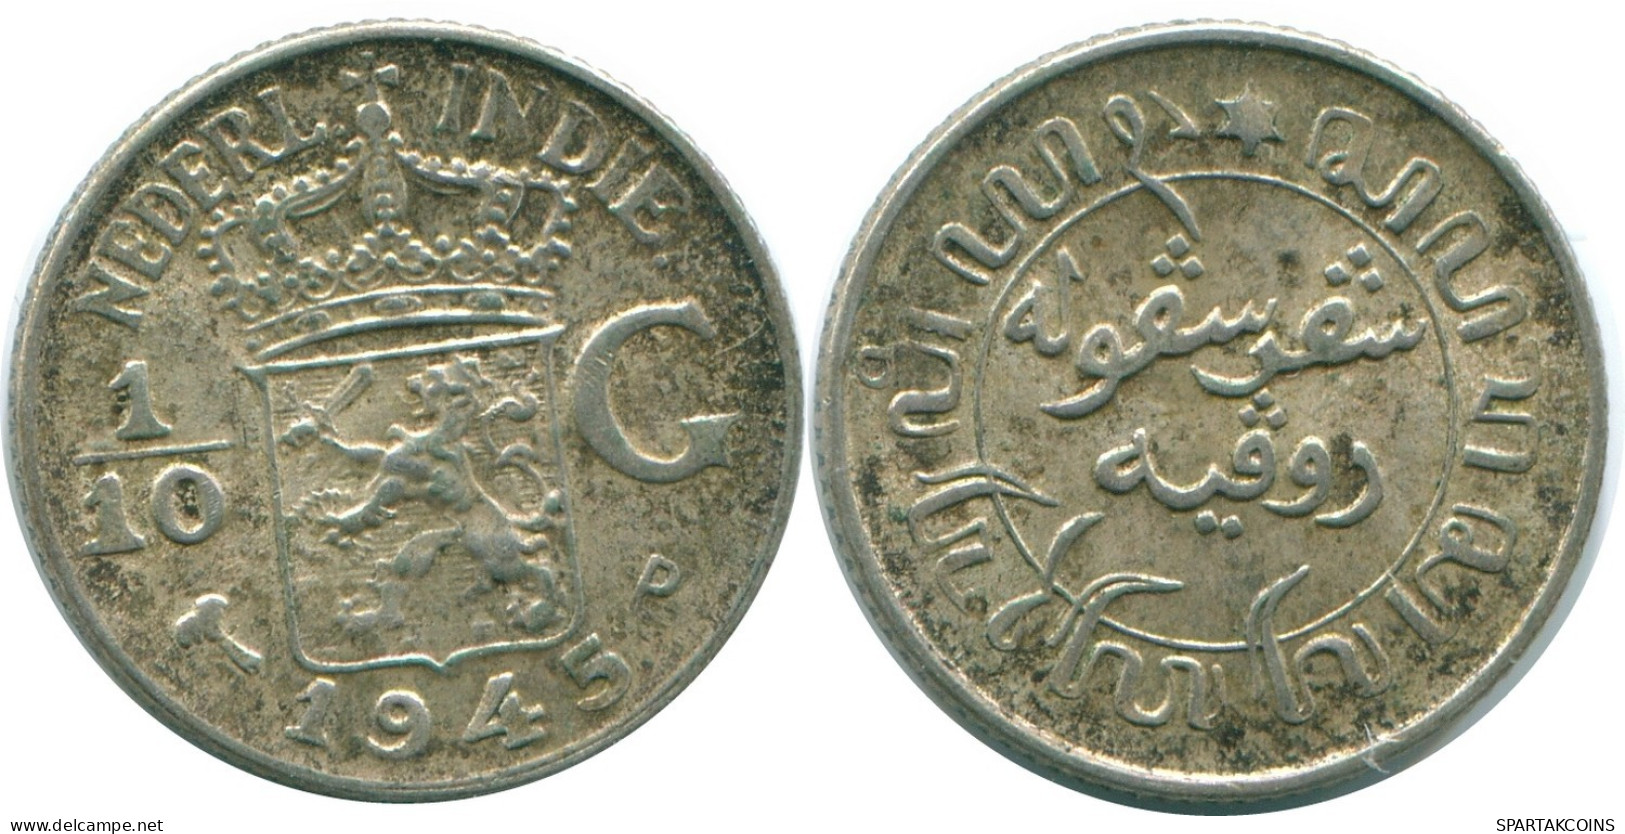 1/10 GULDEN 1945 P NETHERLANDS EAST INDIES SILVER Colonial Coin #NL14216.3.U.A - Niederländisch-Indien